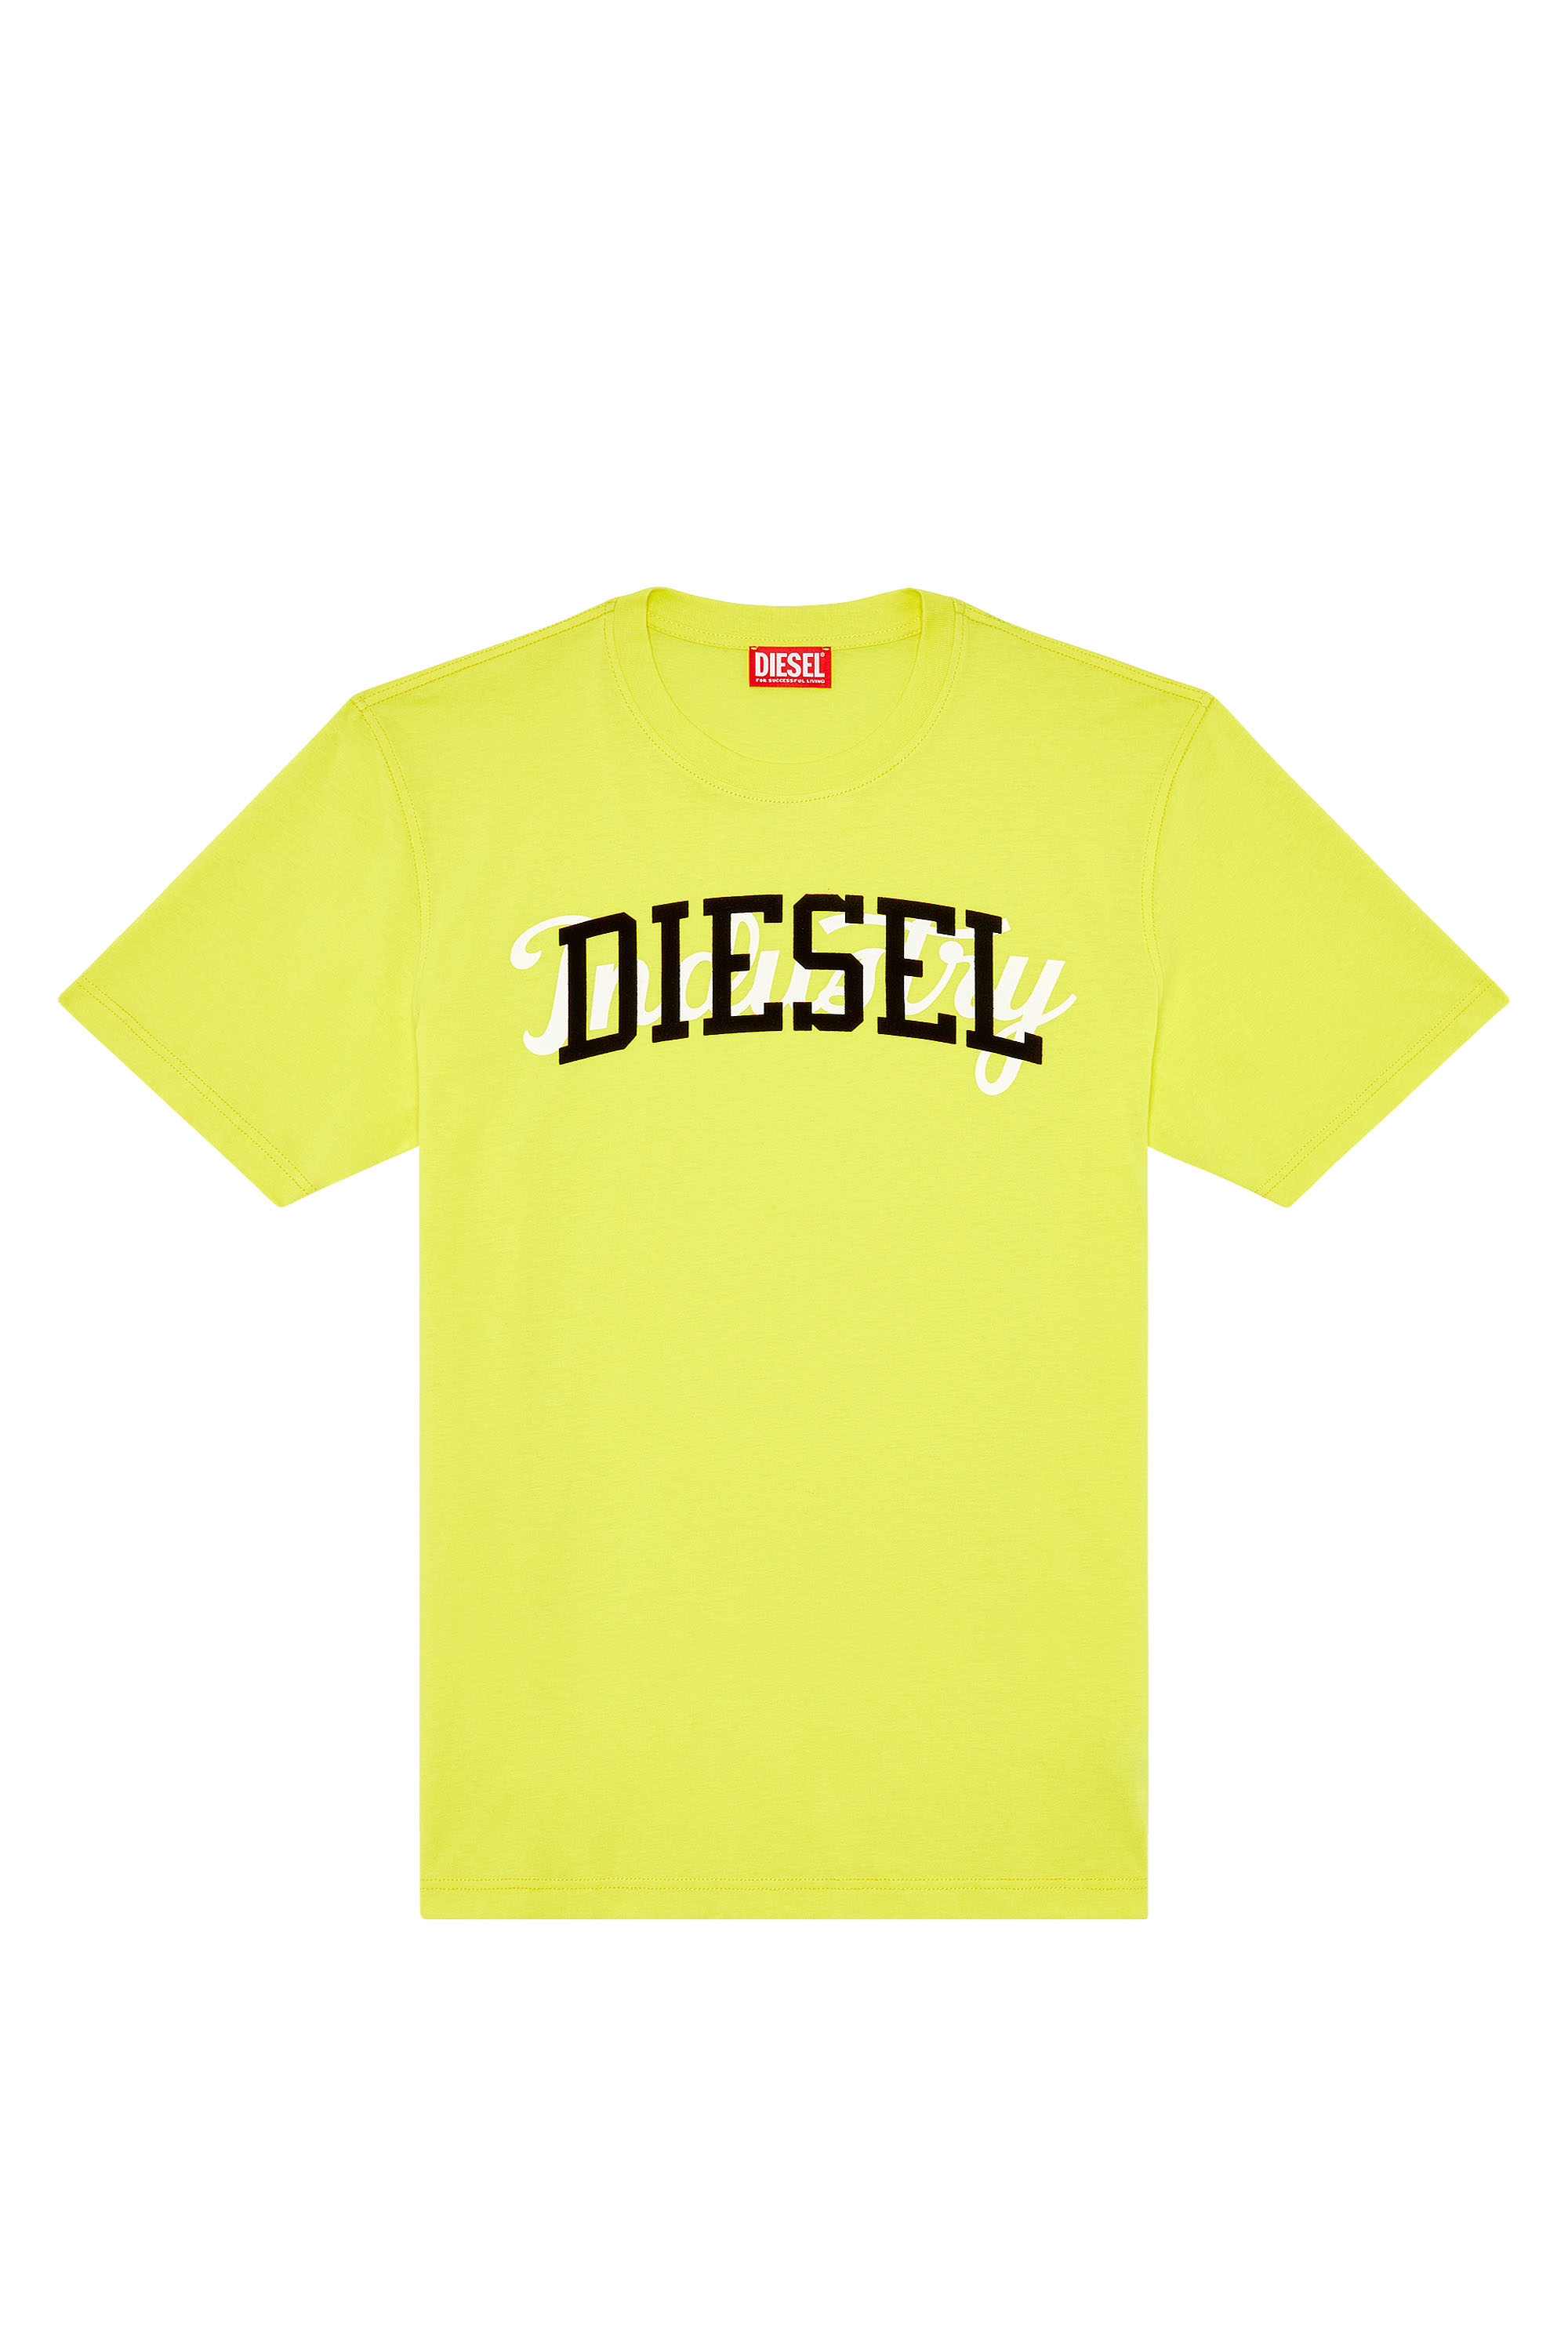 Diesel - T-JUST-N10, Giallo - Image 3